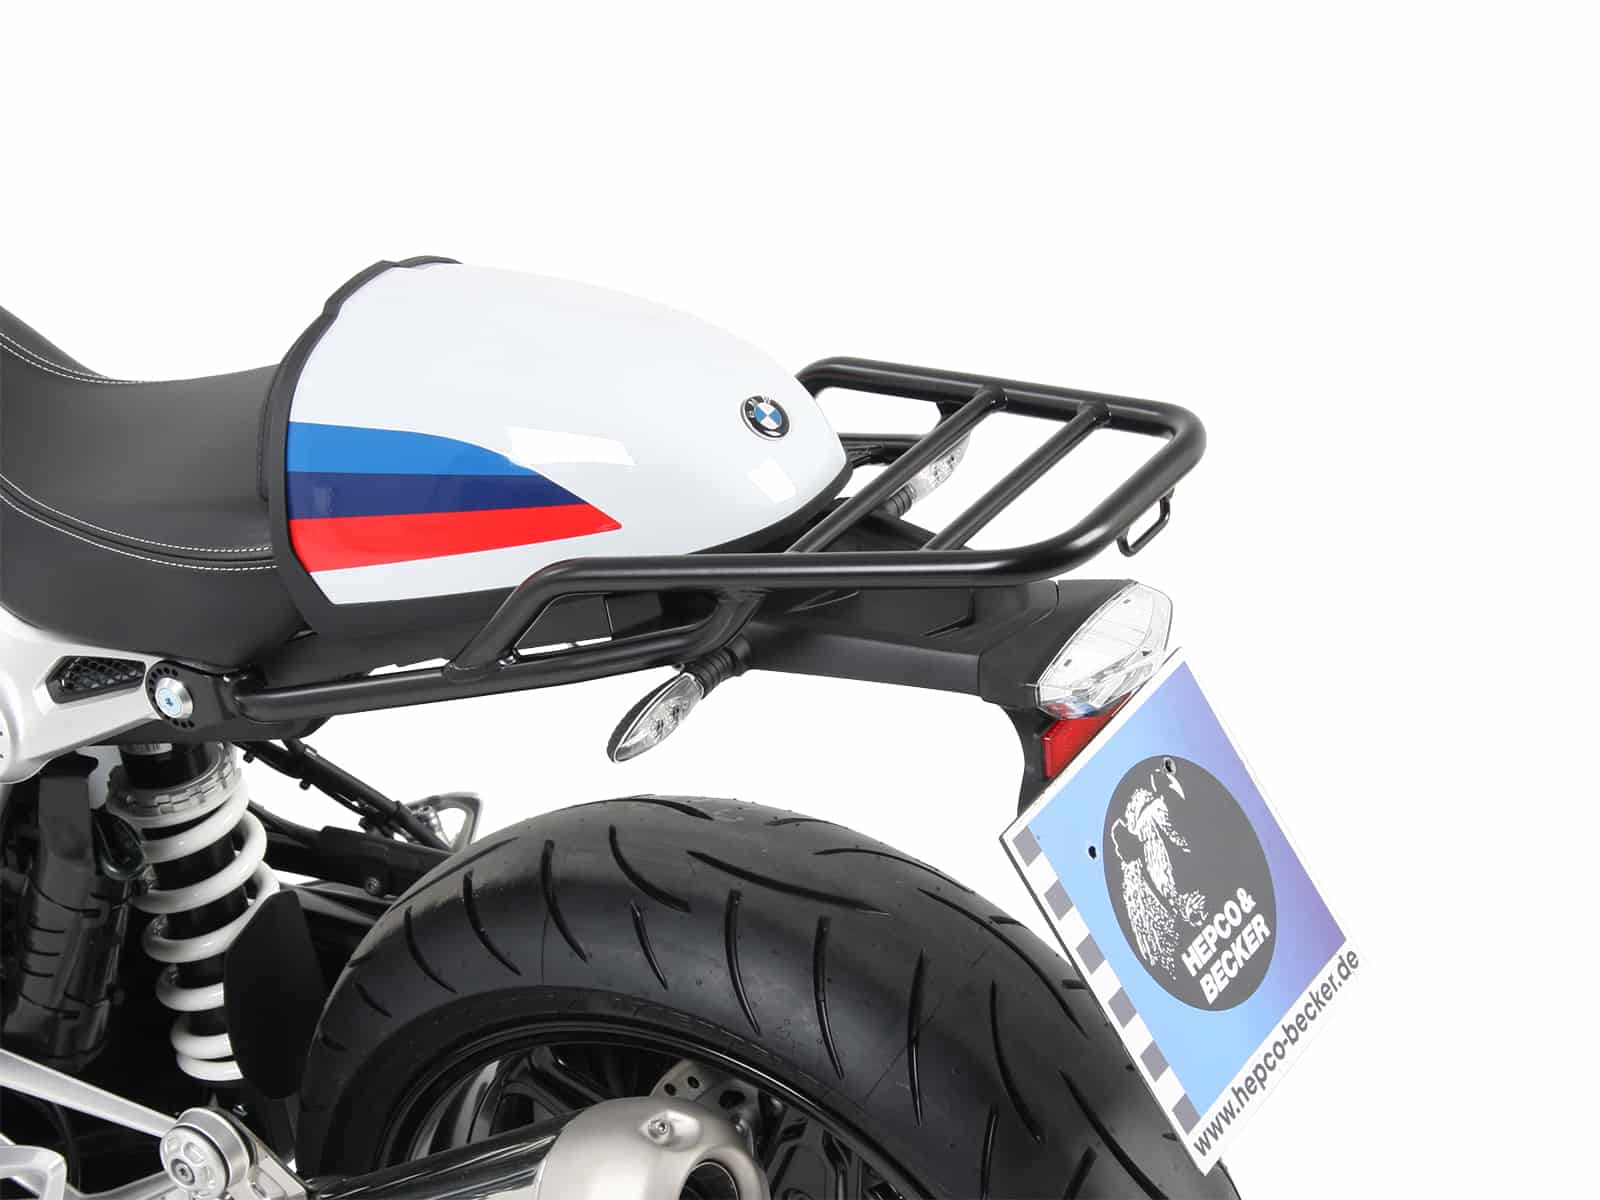 Tube rear rack for BMW R nineT Racer (2017-)